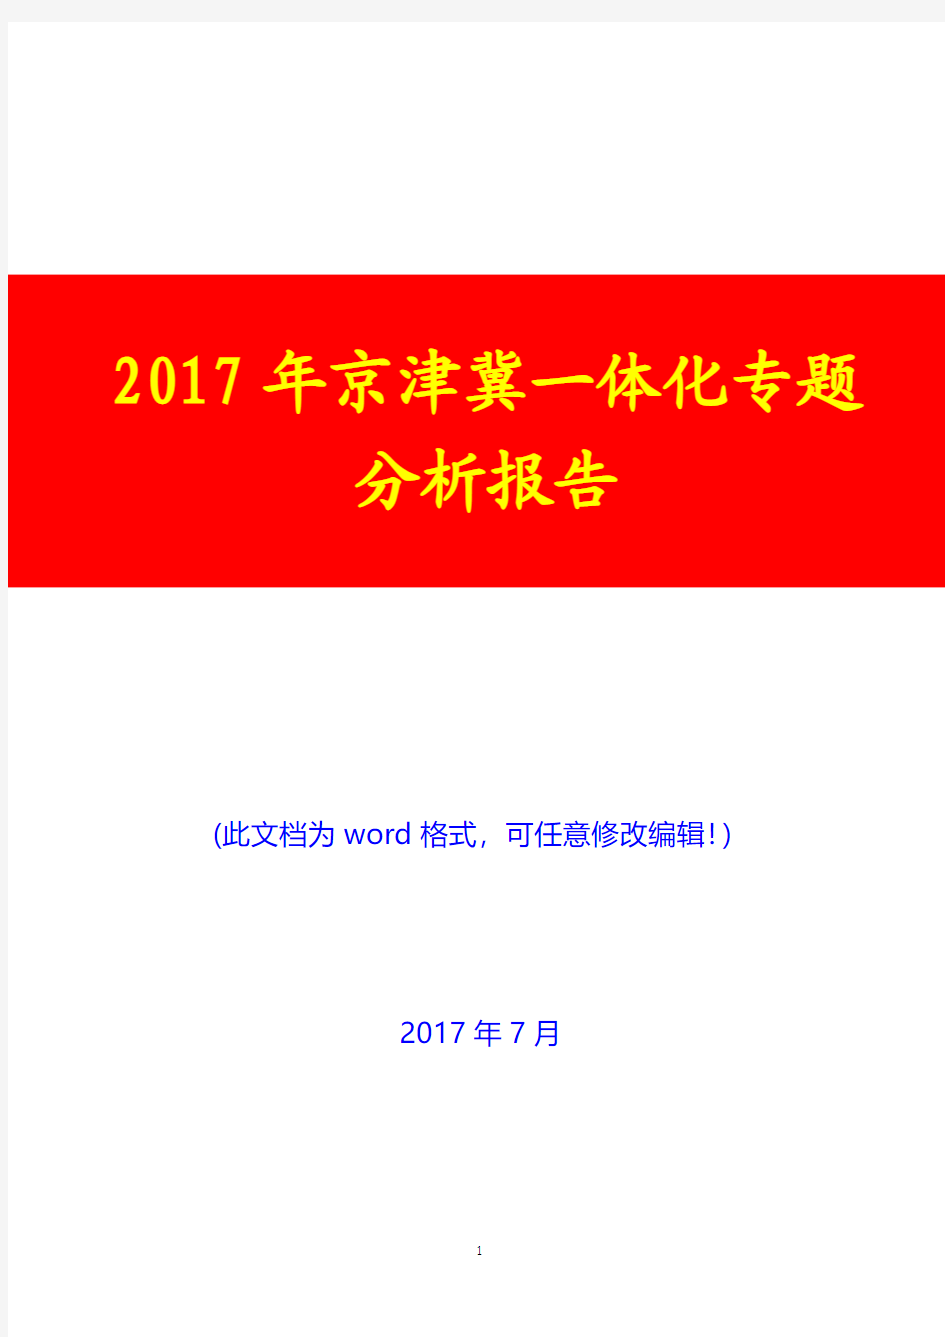 2017年京津冀一体化专题分析报告